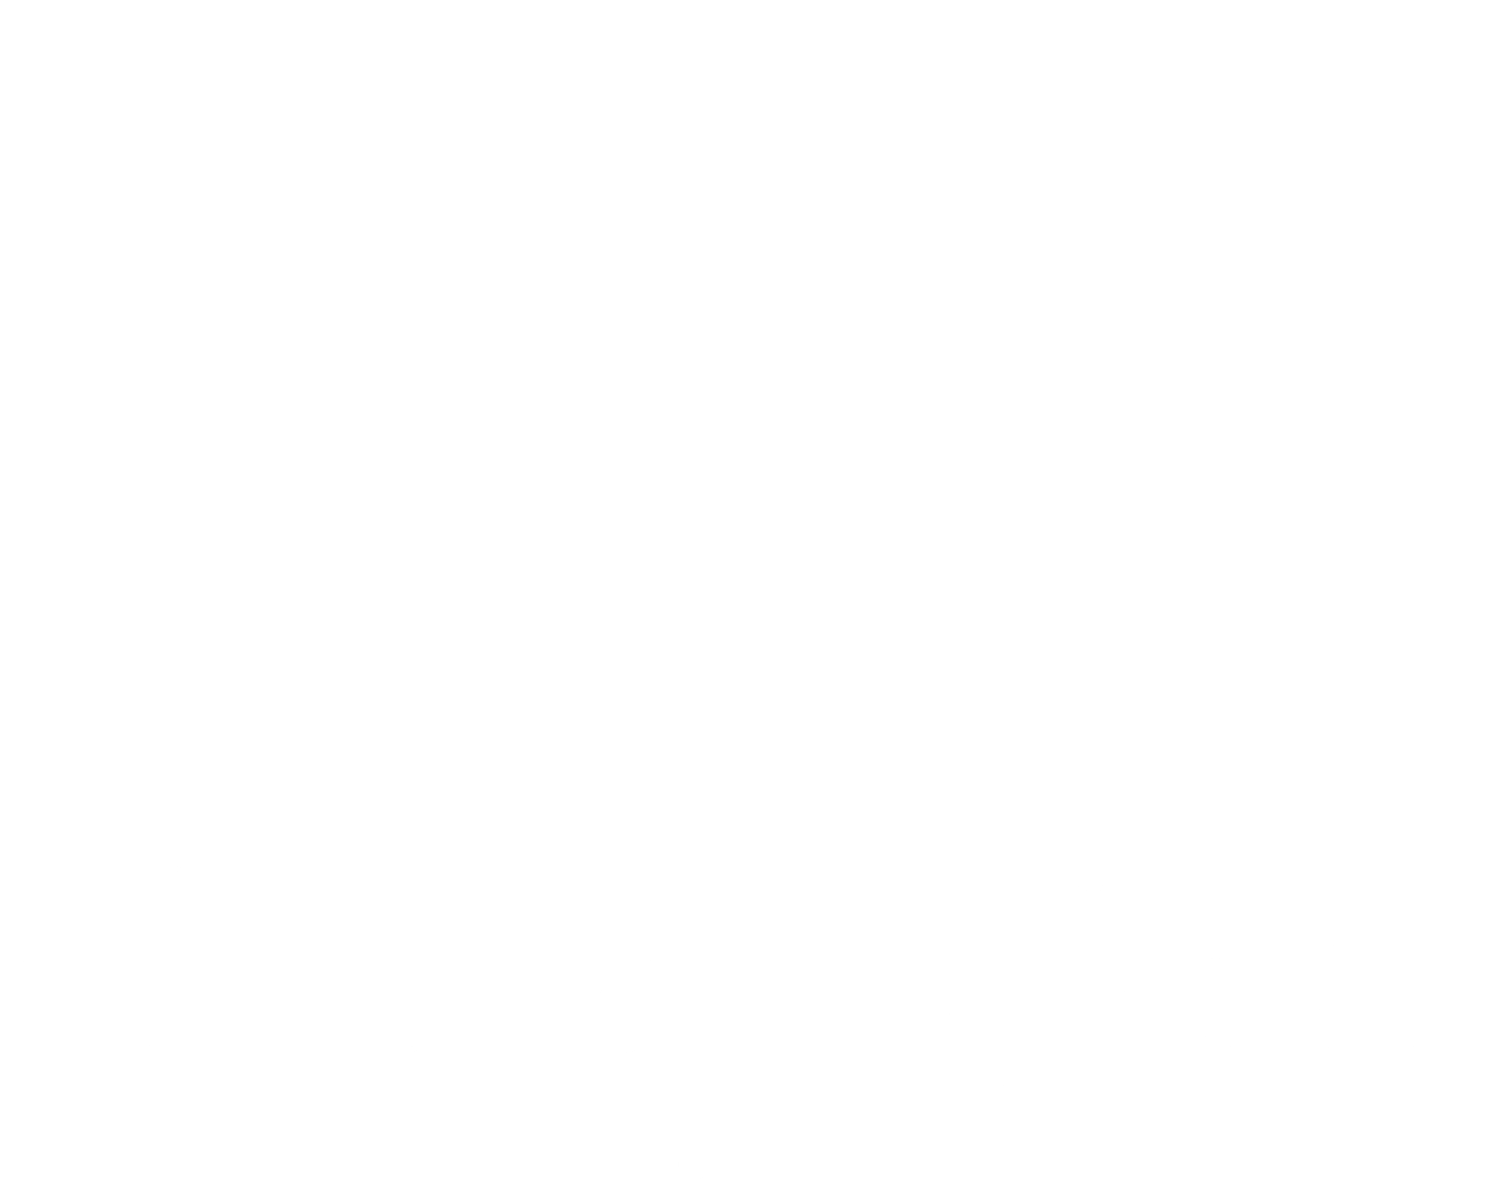 Windy Oaks